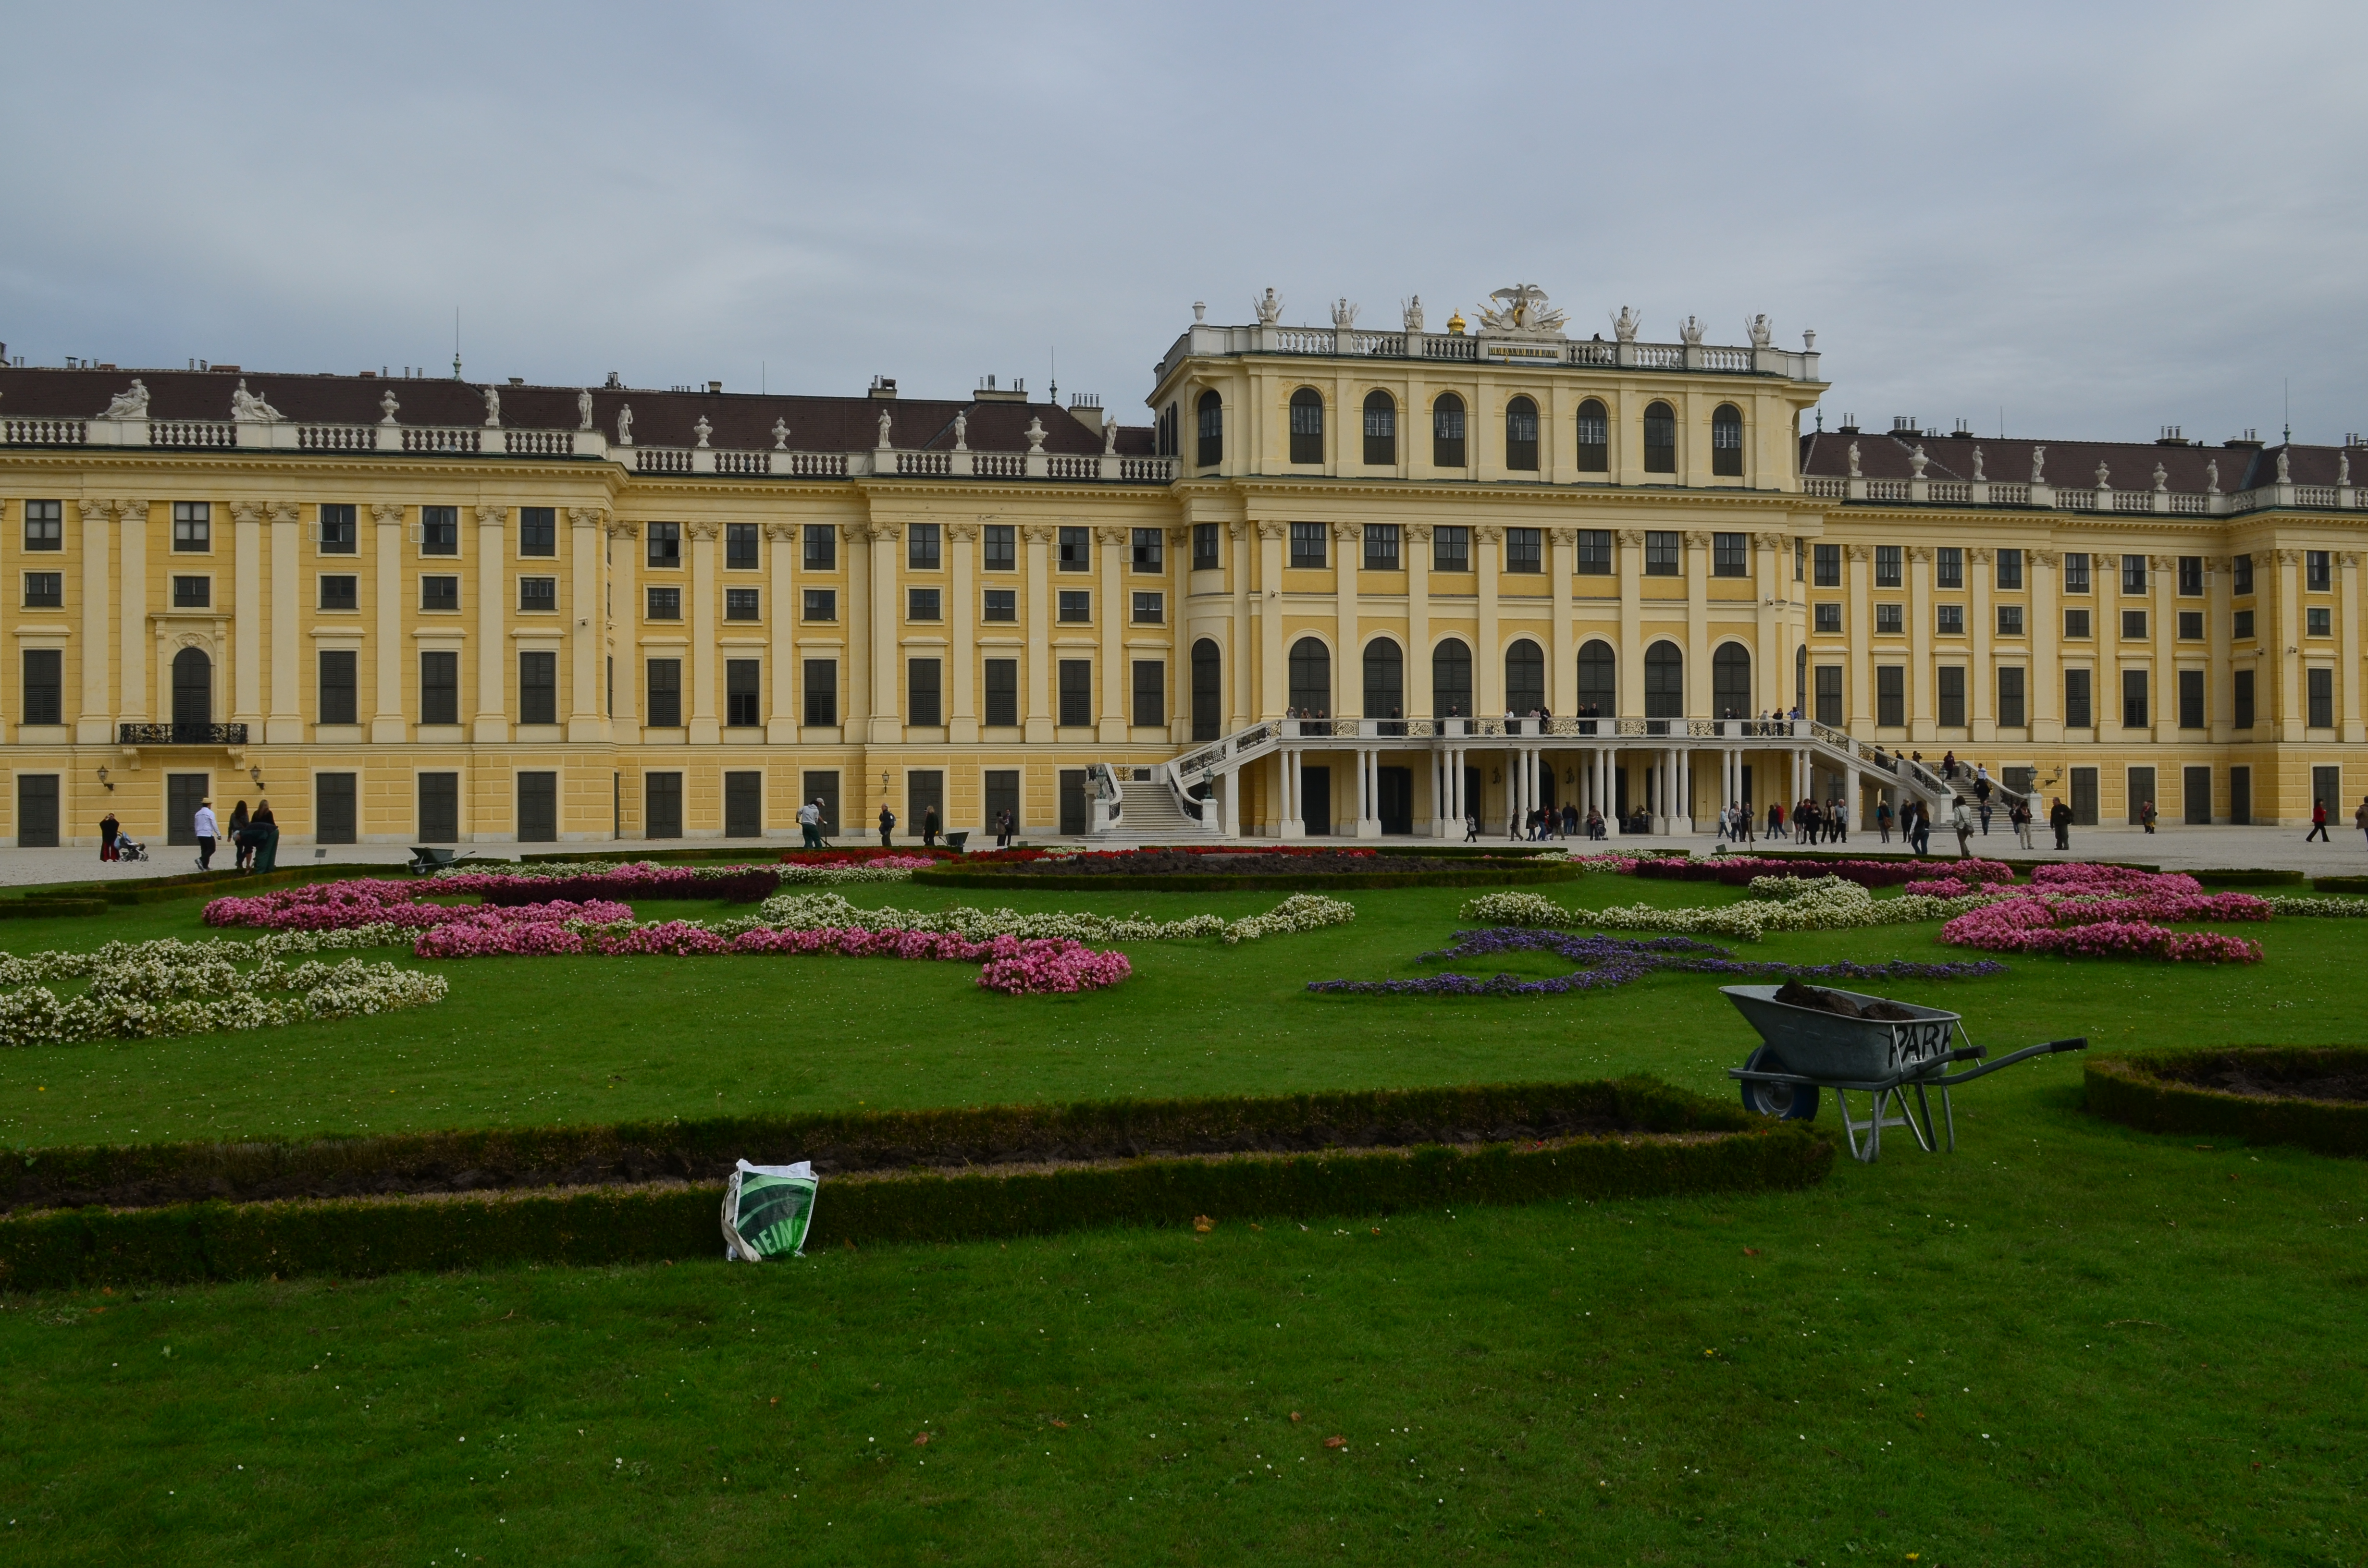 Schonnbrunn palace